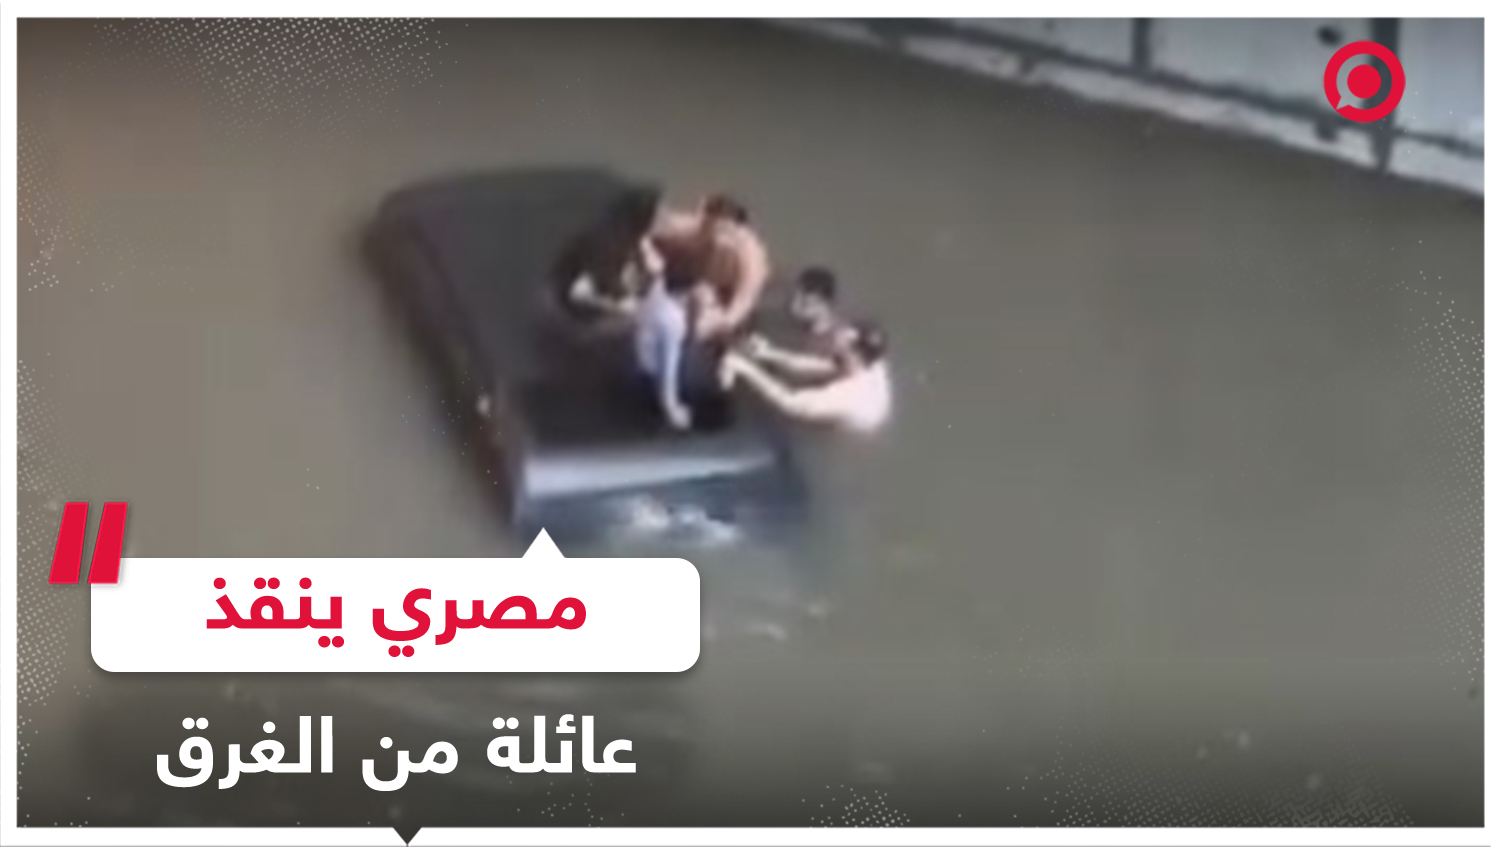 مصرفي مصري ينقذ عائلة إماراتية من الغرق وبنك مصر يكرمه